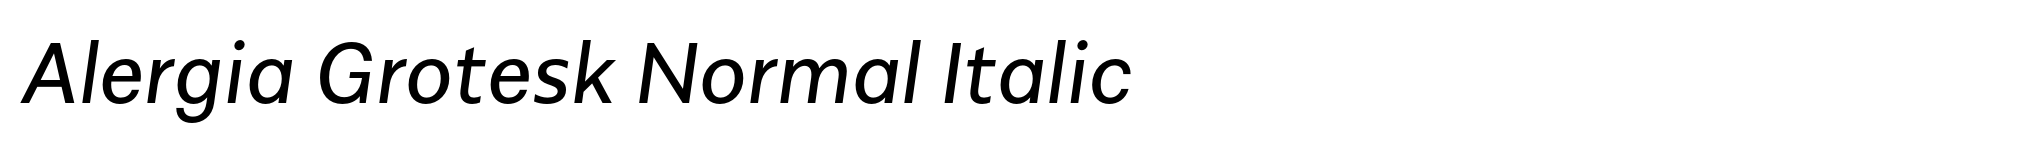 Alergia Grotesk Normal Italic image